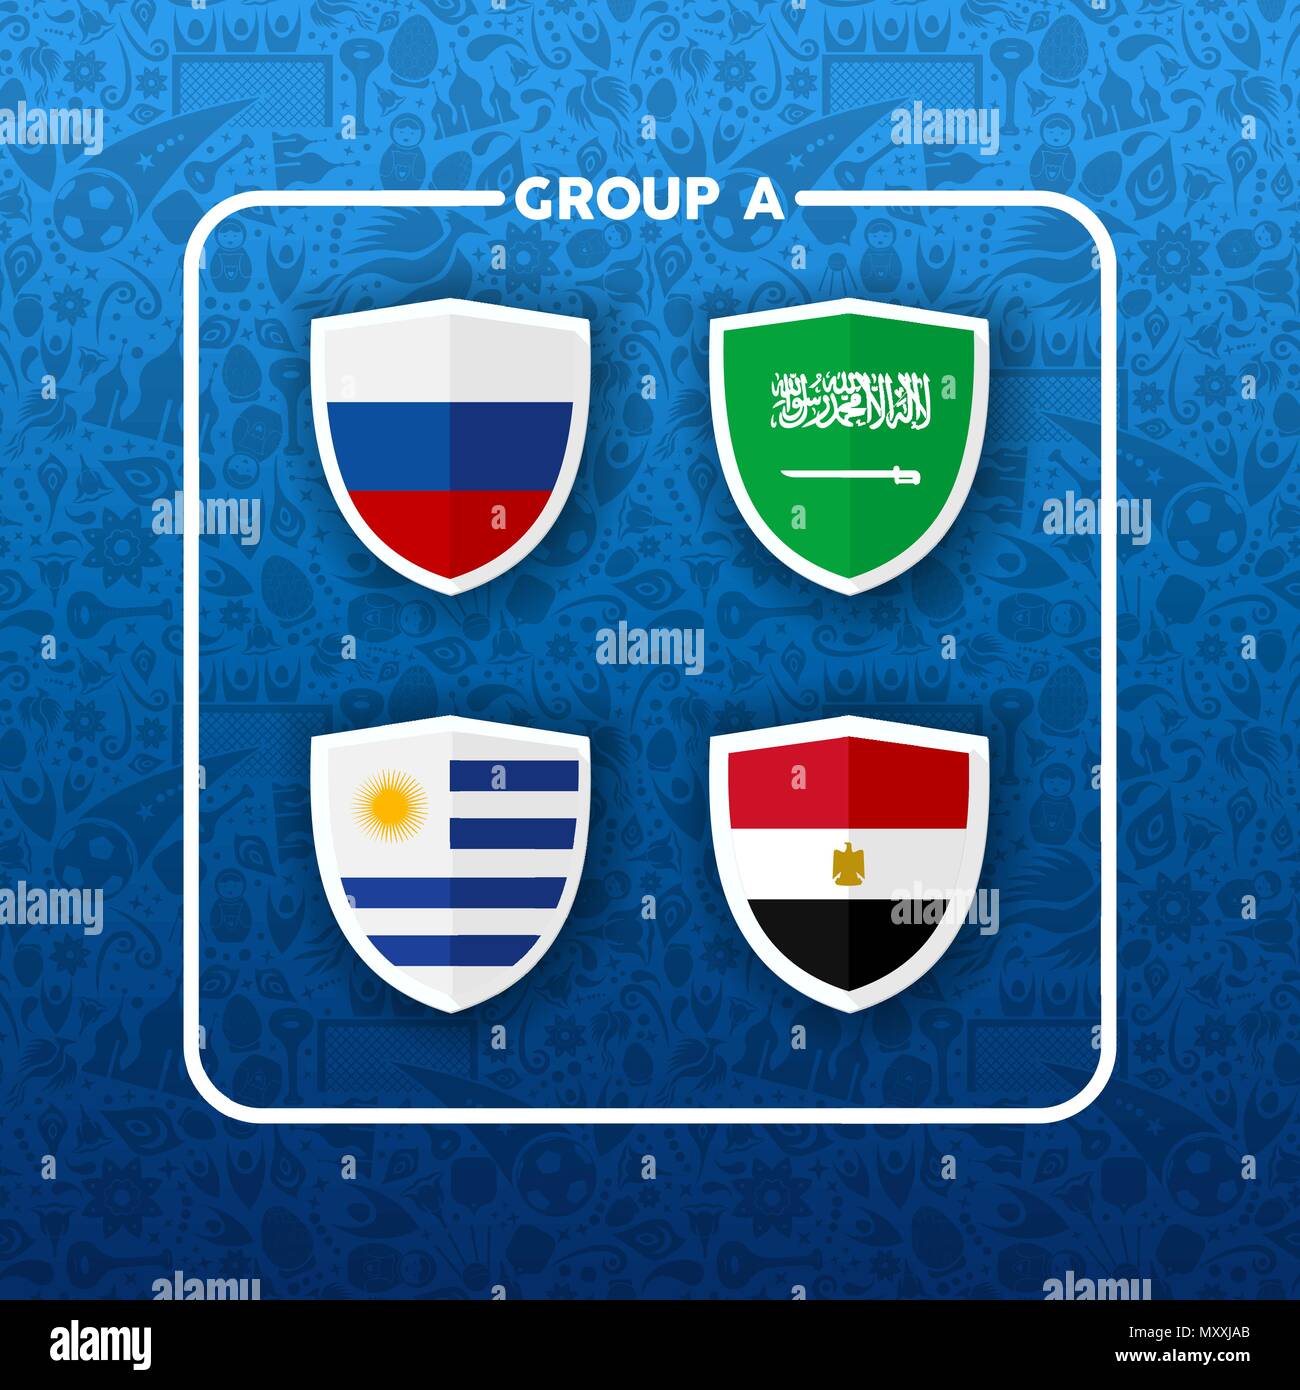 Fußball-Weltmeisterschaft Veranstaltungsplan für 2018. Gruppe A Land team Liste der Fußball-Match spiele. Gehören Russland, Saudi-Arabien, Ägypten und Uruguay. EPS 1. Stock Vektor